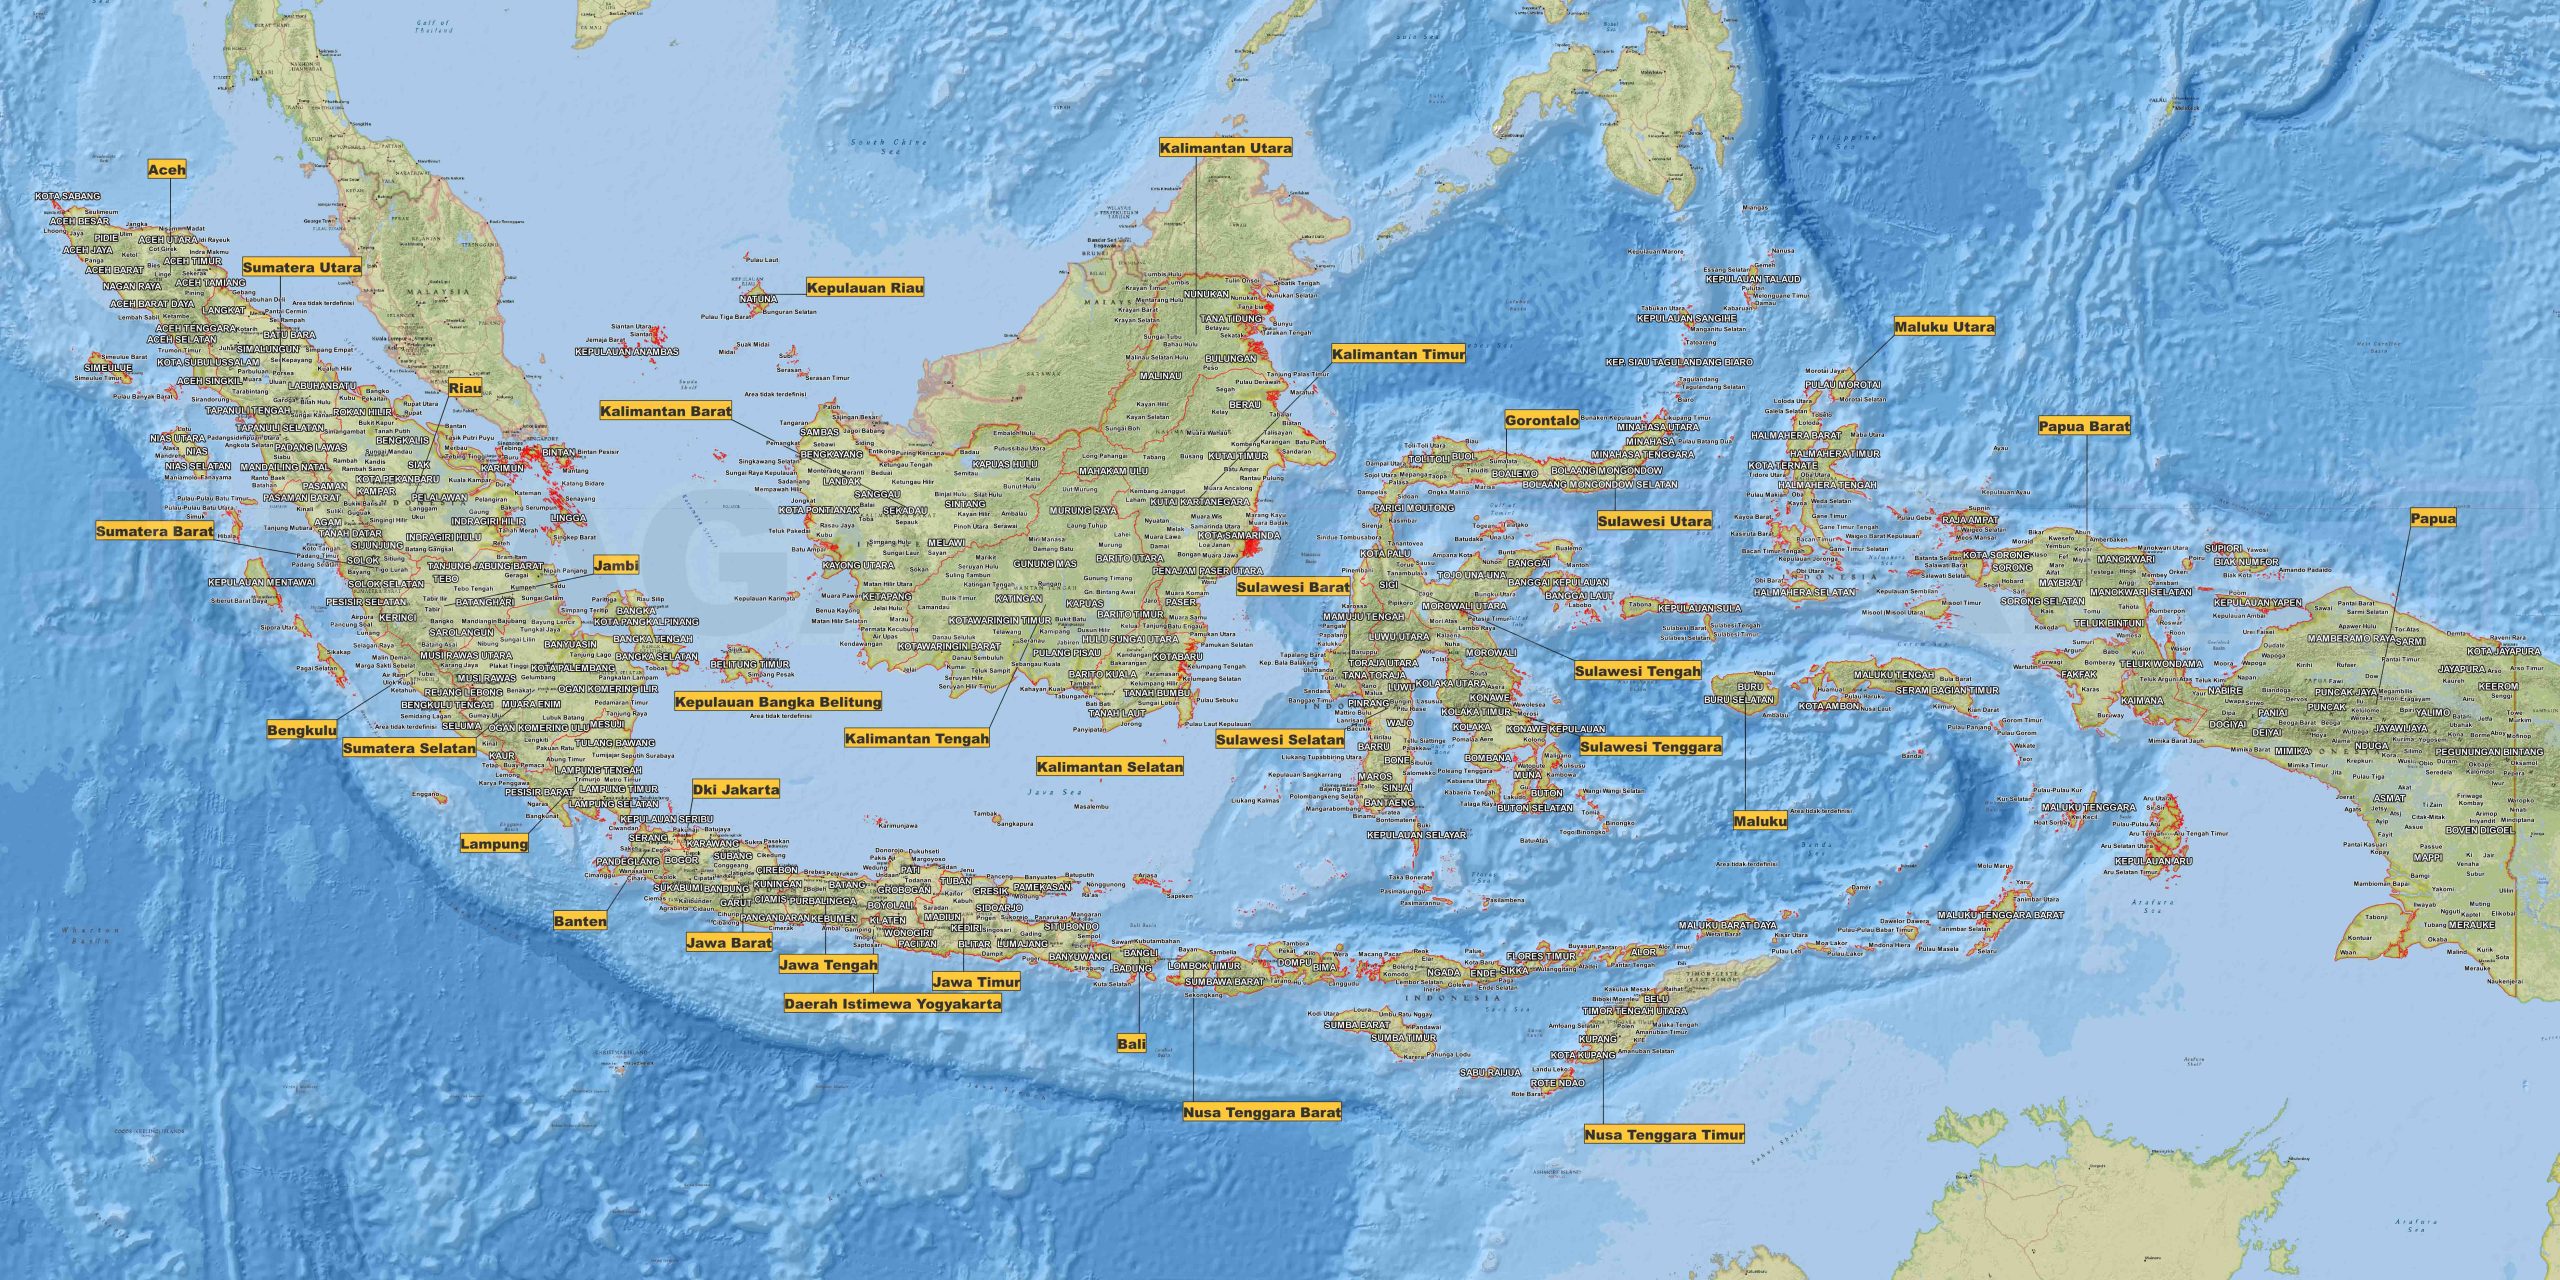 Menggambar Peta Indonesia Lengkap: Panduan untuk Menciptakan Peta